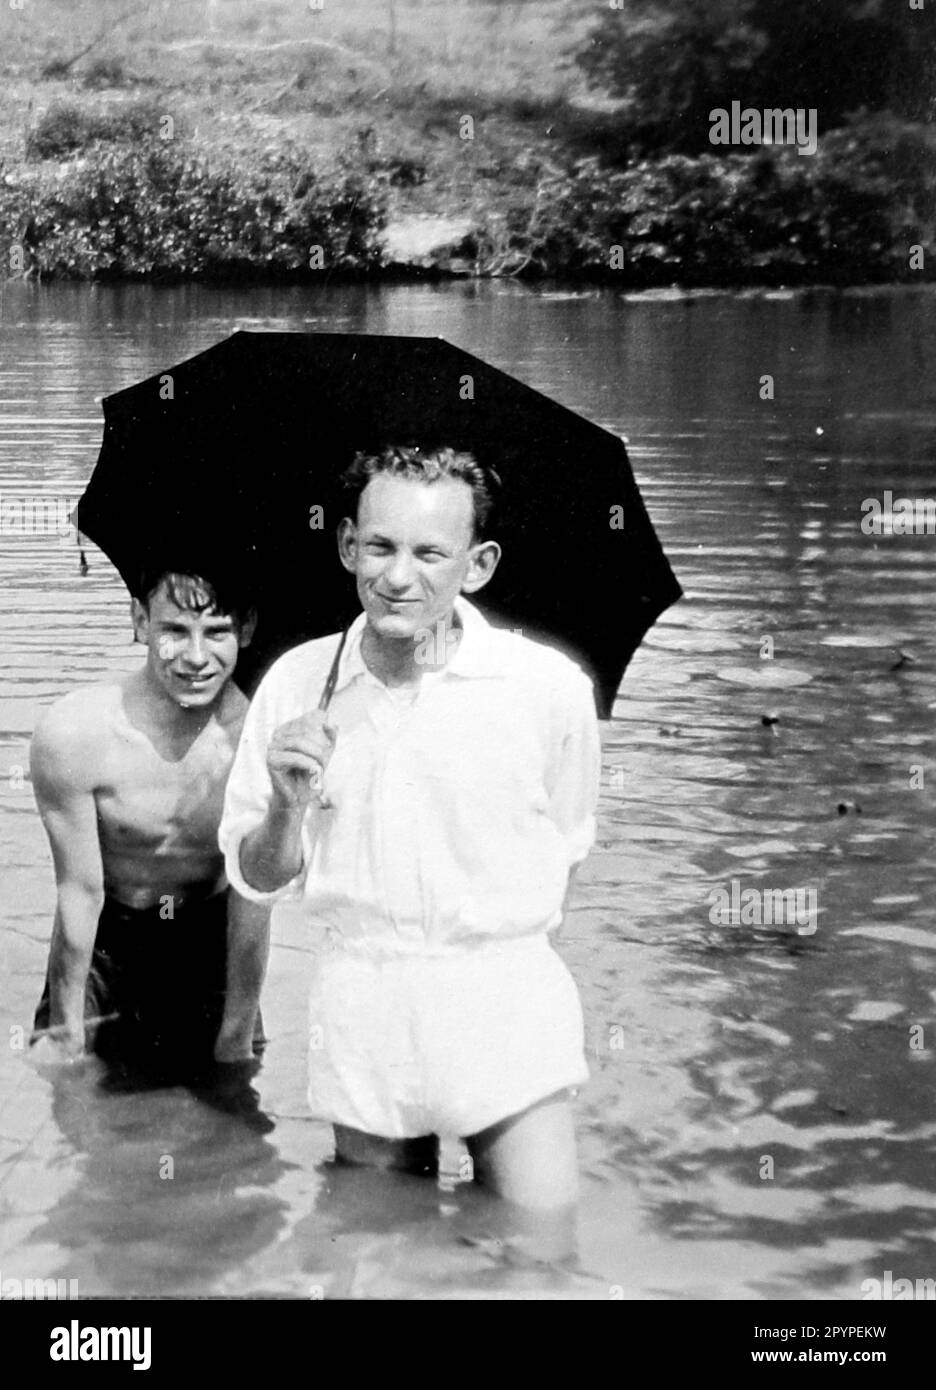 Zwei Männer im tiefen Wasser mit einem Regenschirm, c1928. Aus einem einzigartigen Fotoalbum, das von K.W. zusammengestellt wurde Parkhurst, einem Landlager in Bolney (einer landwirtschaftlichen Gemeinde), West Sussex, England, das zwischen 1928 und 1930 ein regelmäßiges Ziel für eine Gruppe junger Männer war, darunter Mr. Parkhurst. Dies geschah während der Zeit der Großen Depression. Stockfoto